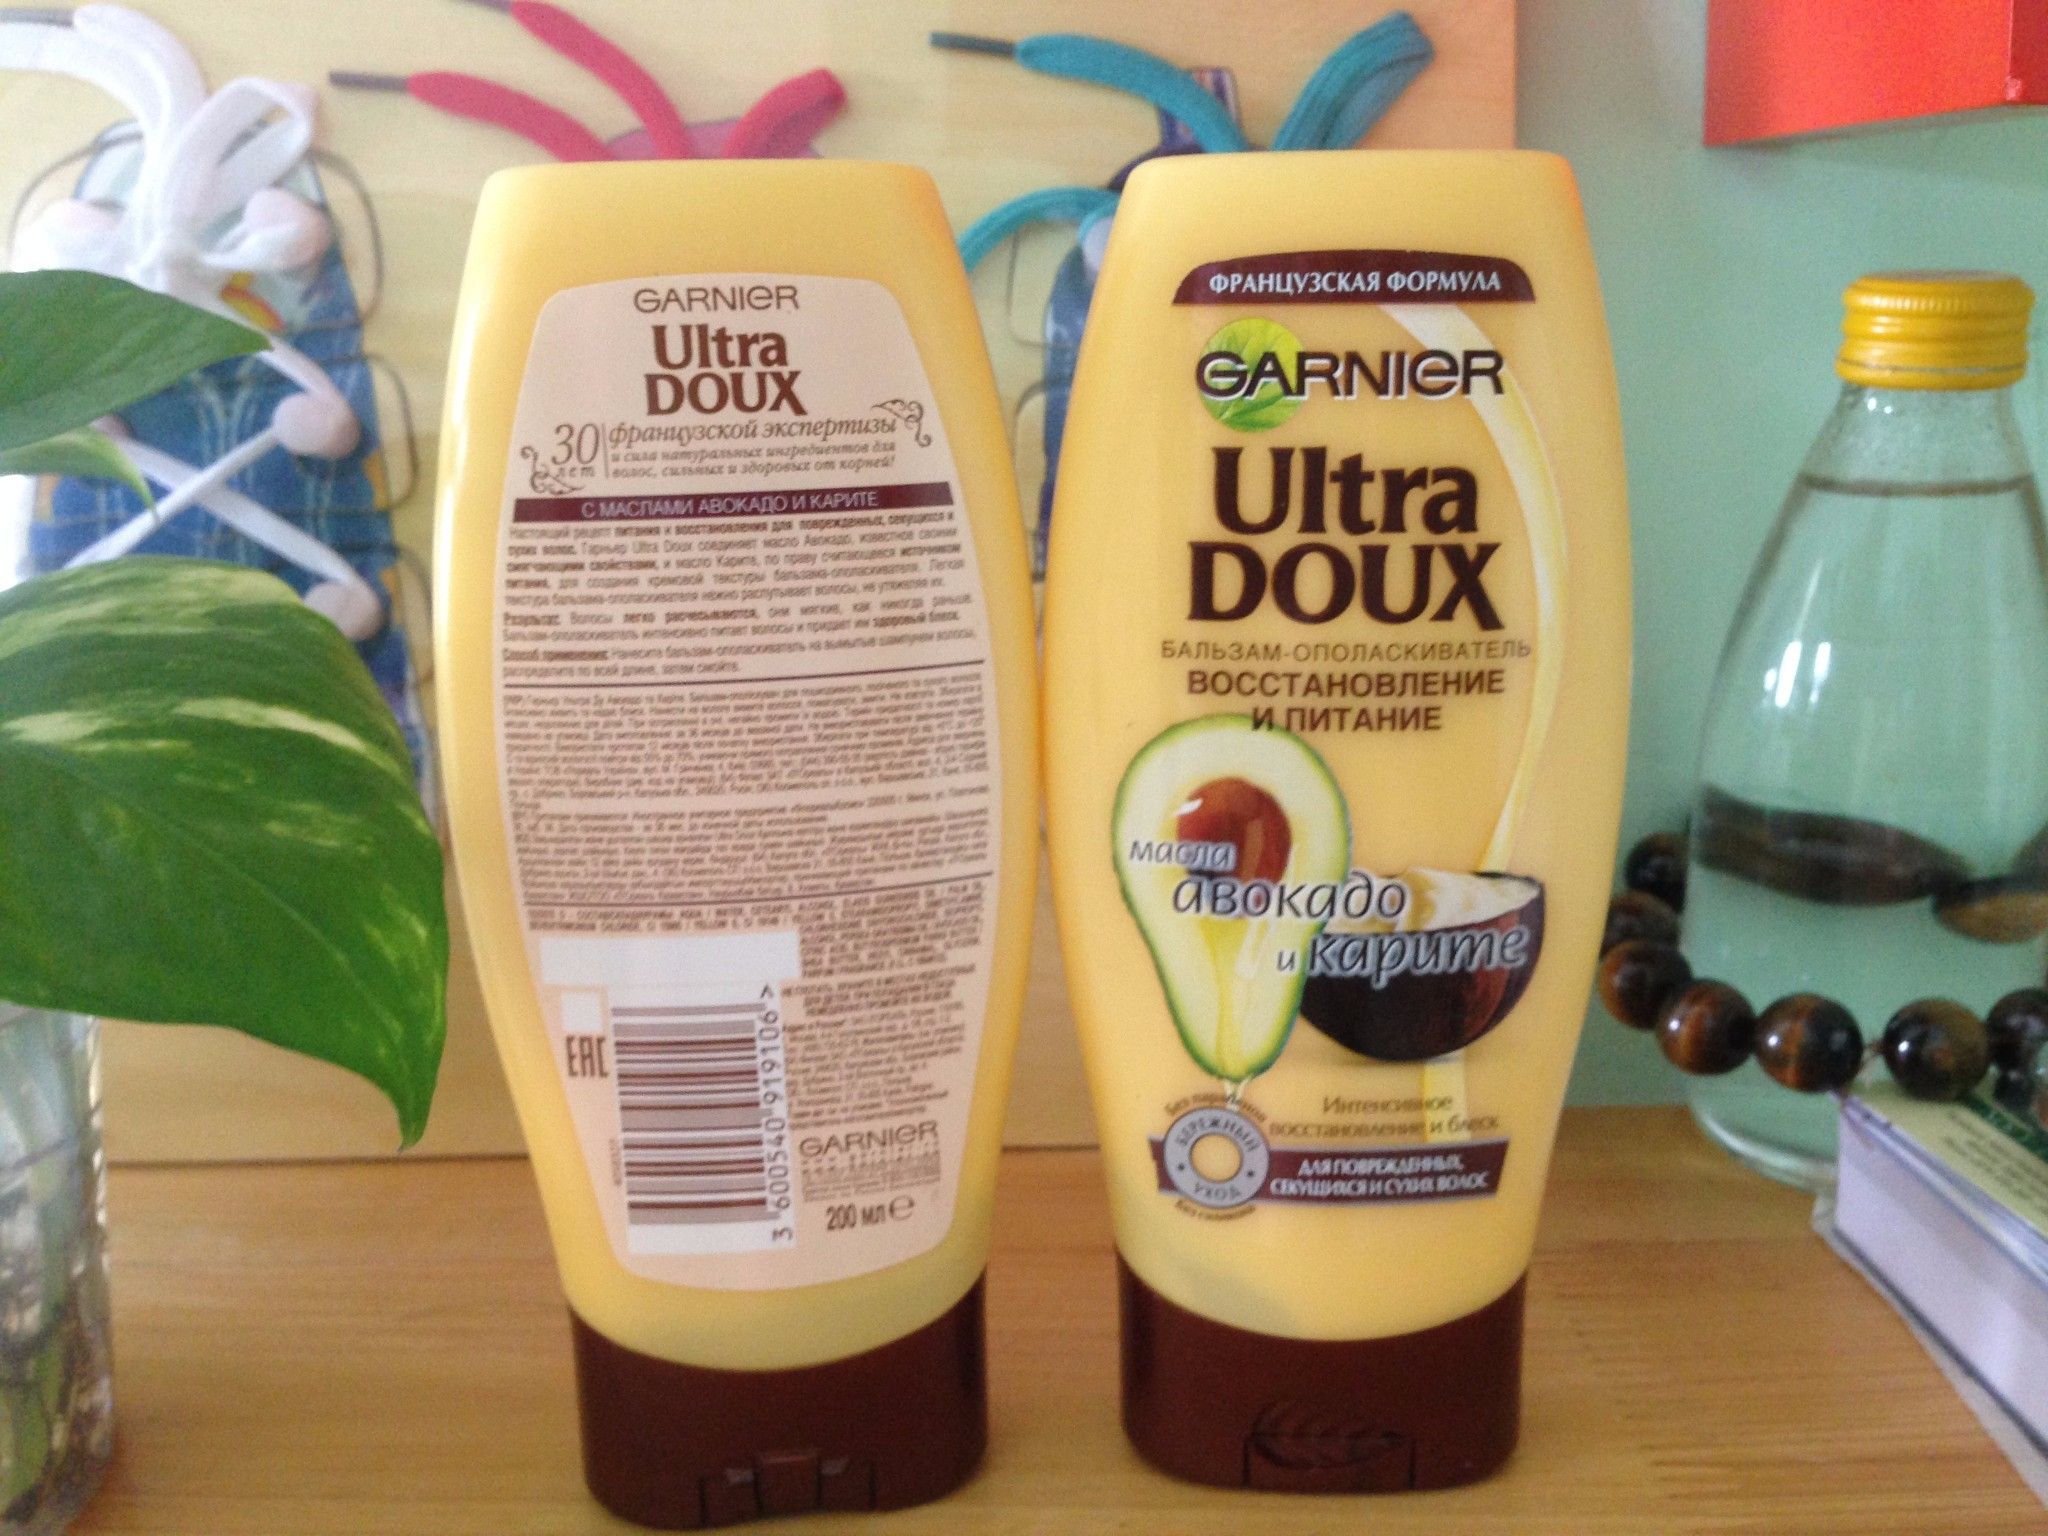 Dầu xả Garnier Ultra Doux tinh chất bơ dưỡng ẩm cho tóc - Mỹ phẩm Nga Kennyplatform.com - GV 105